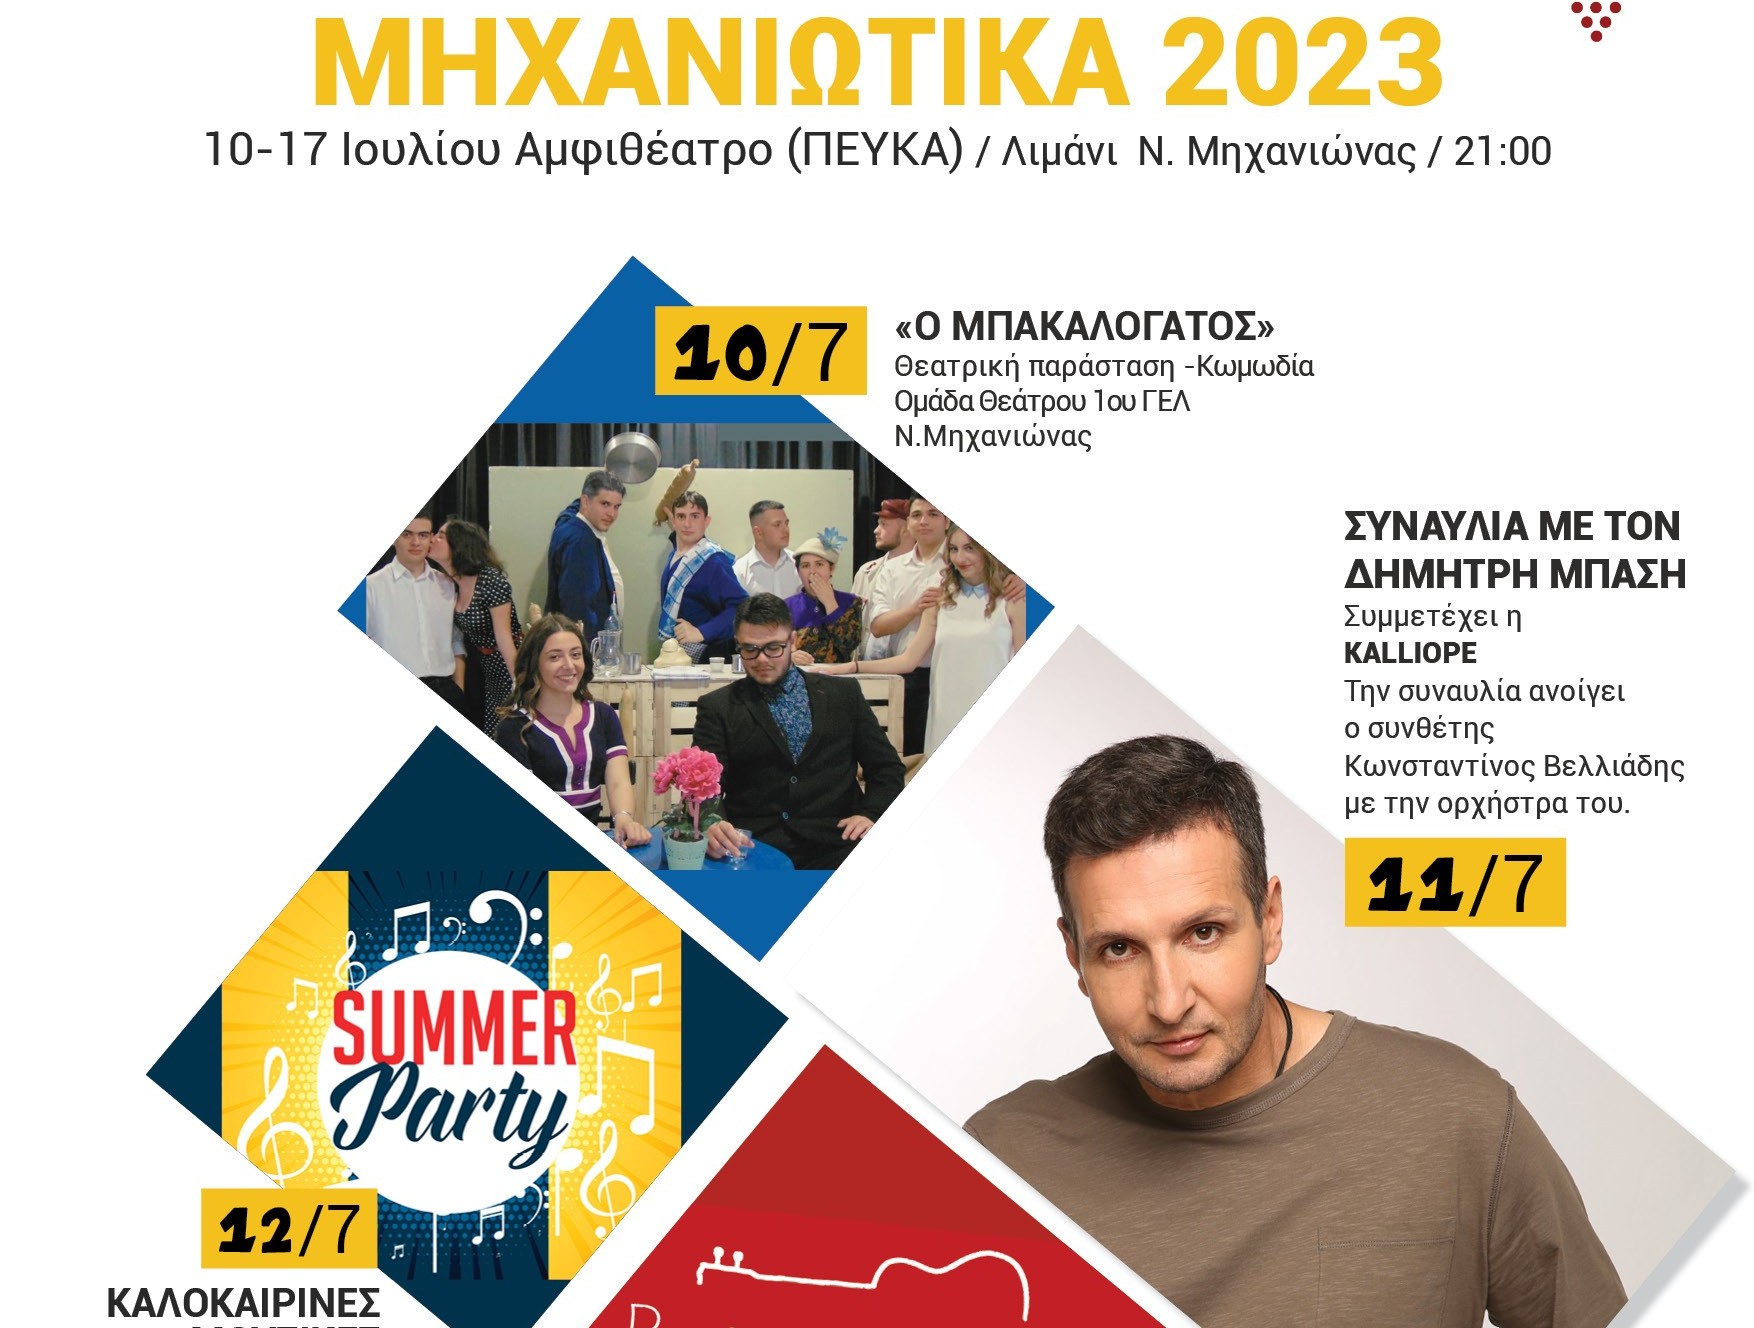 Θεσσαλονίκη: Ξεκινούν τα Μηχανιώτικα 2023